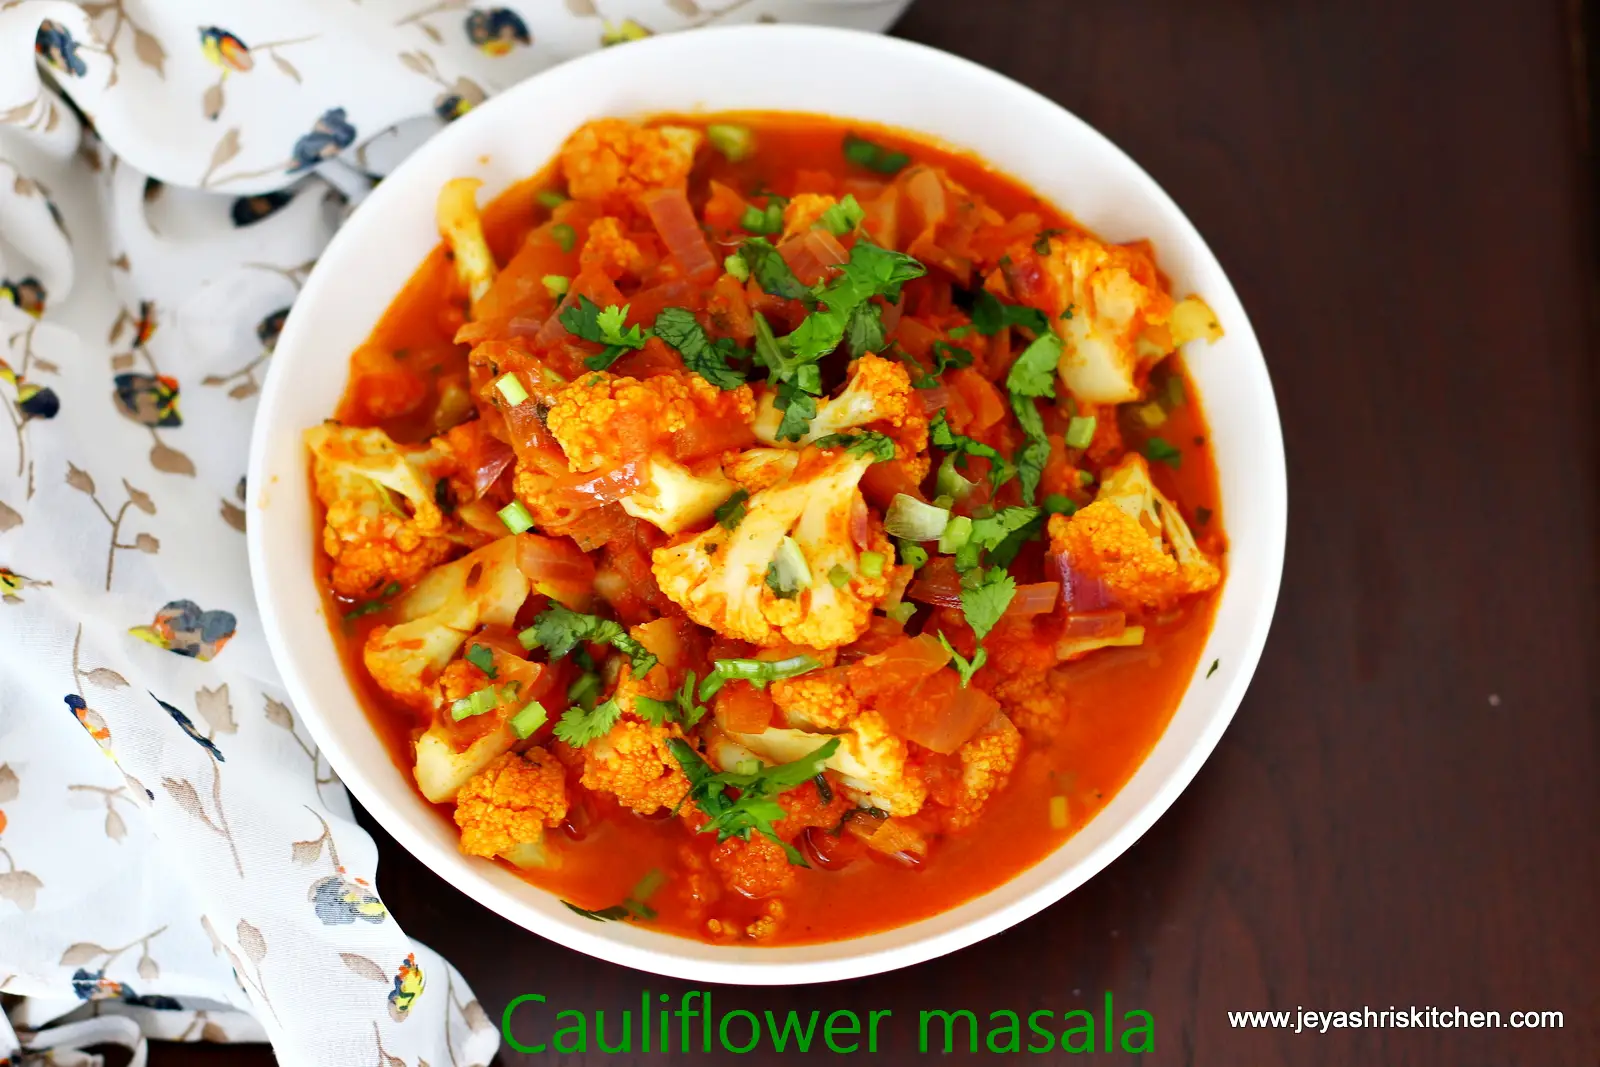 How to make cauliflower masala